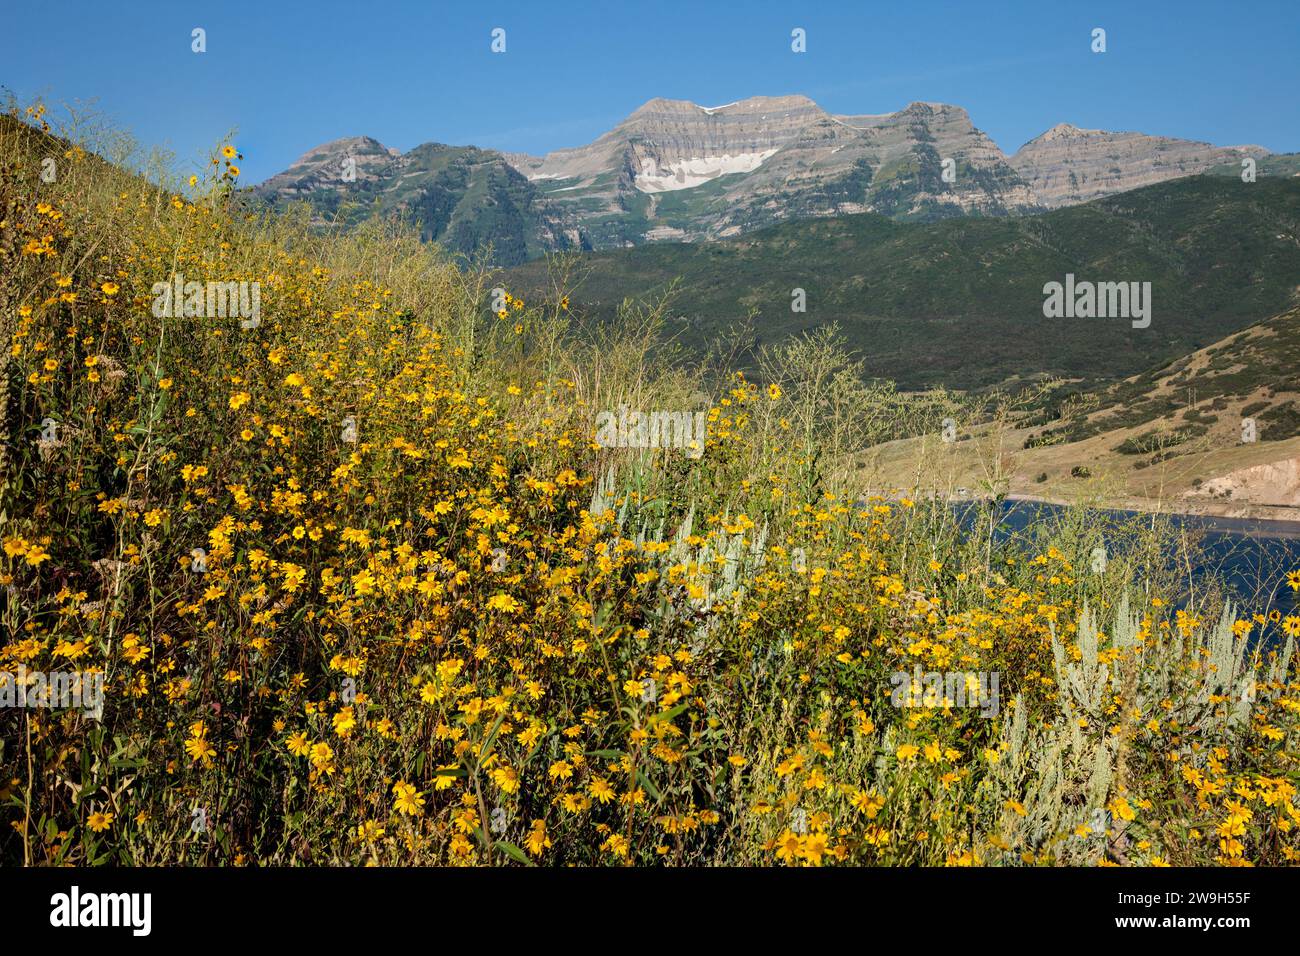 Wildblumen und die Ostwand des Mount Timpanogos in der Wasatch Mountain Range im Norden Utahs. Stockfoto